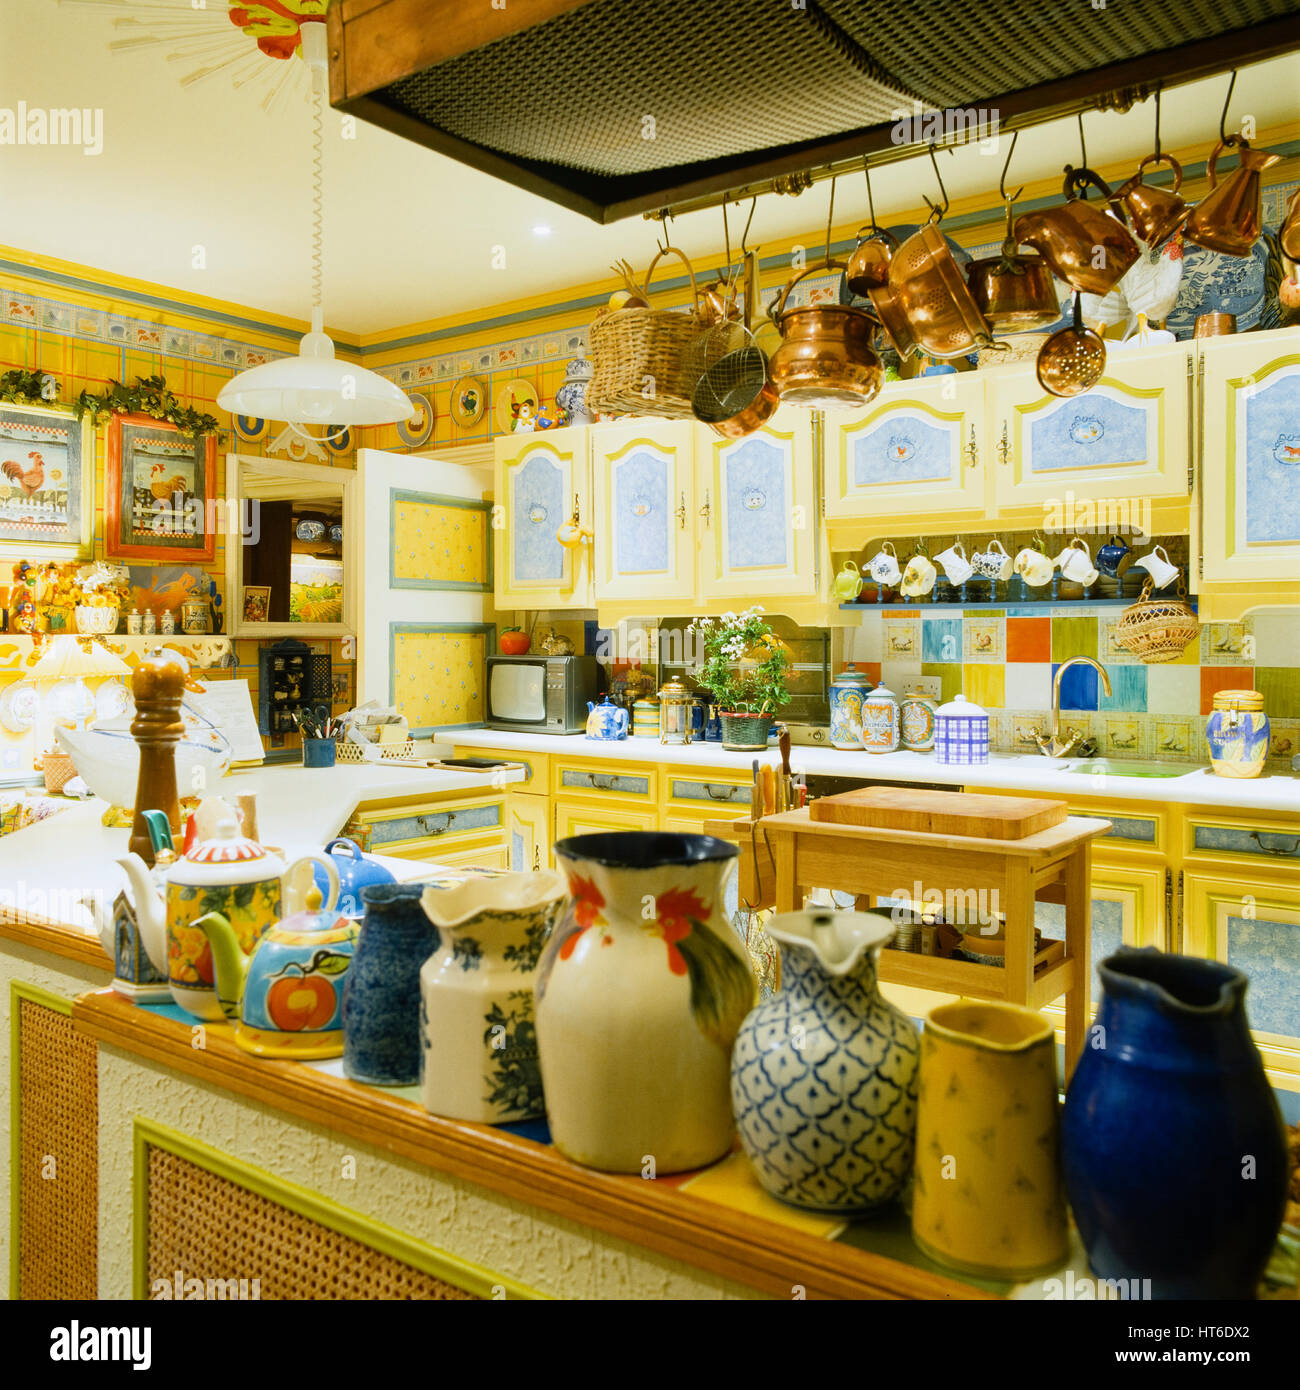 Retro style yellow kitchen. Stock Photo